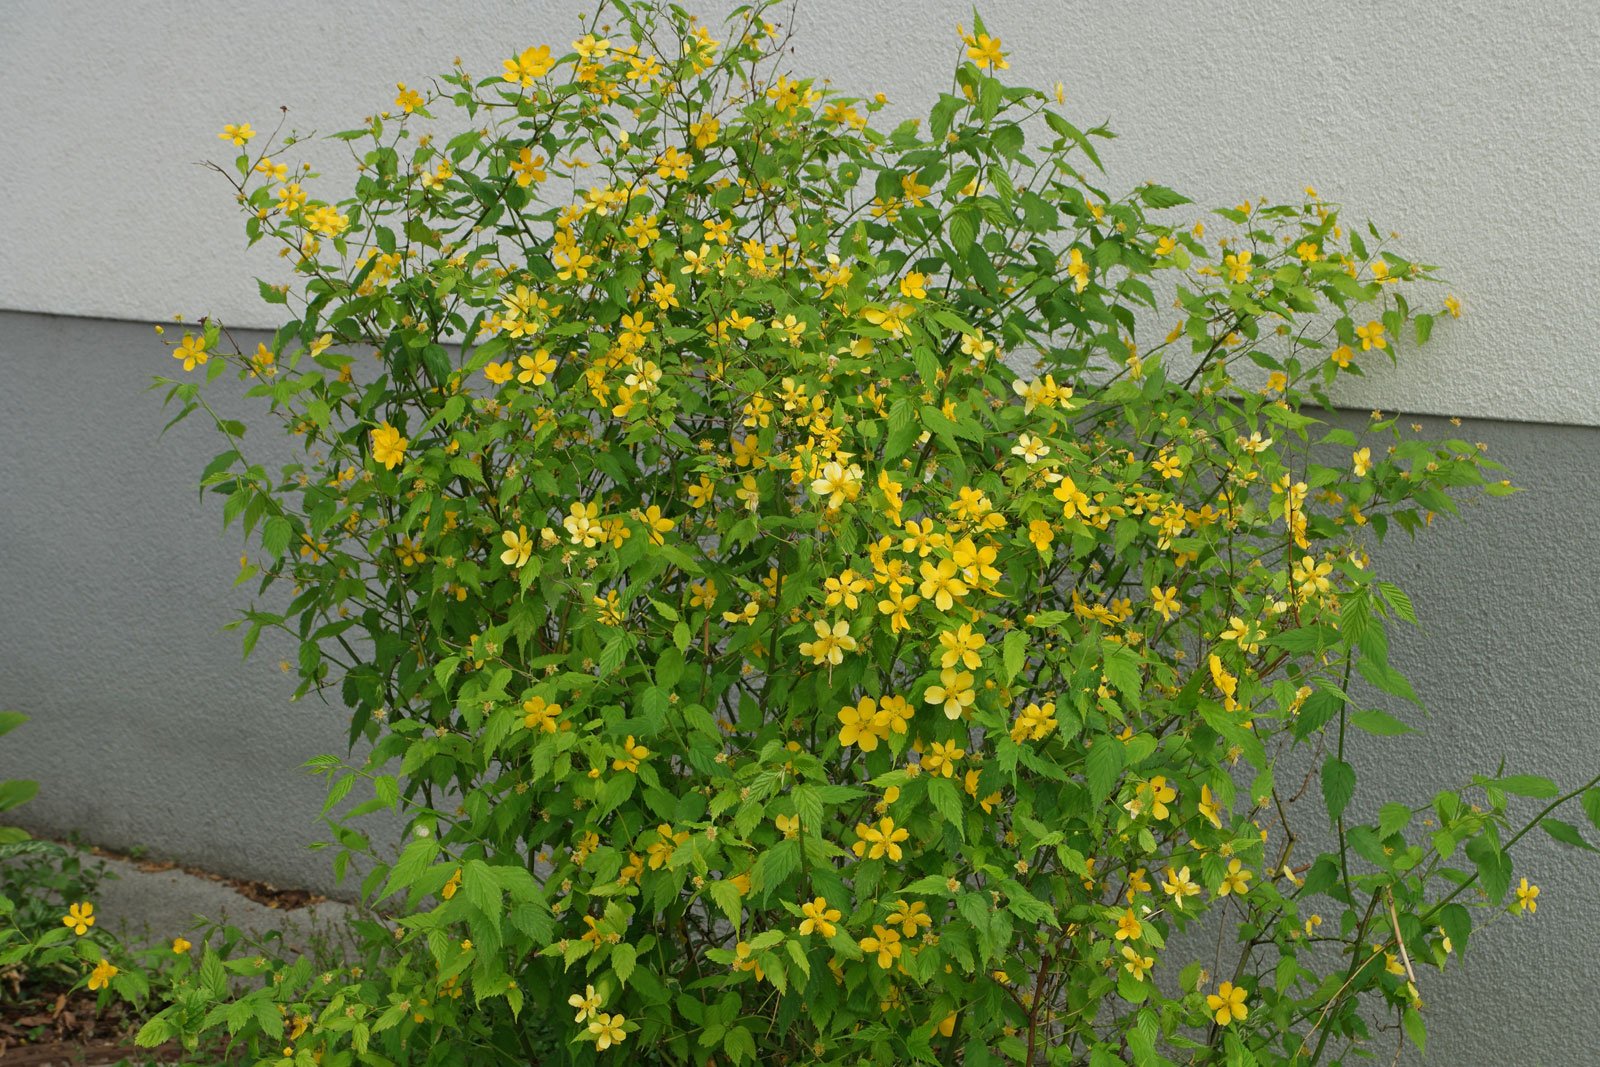 Kerria japonica